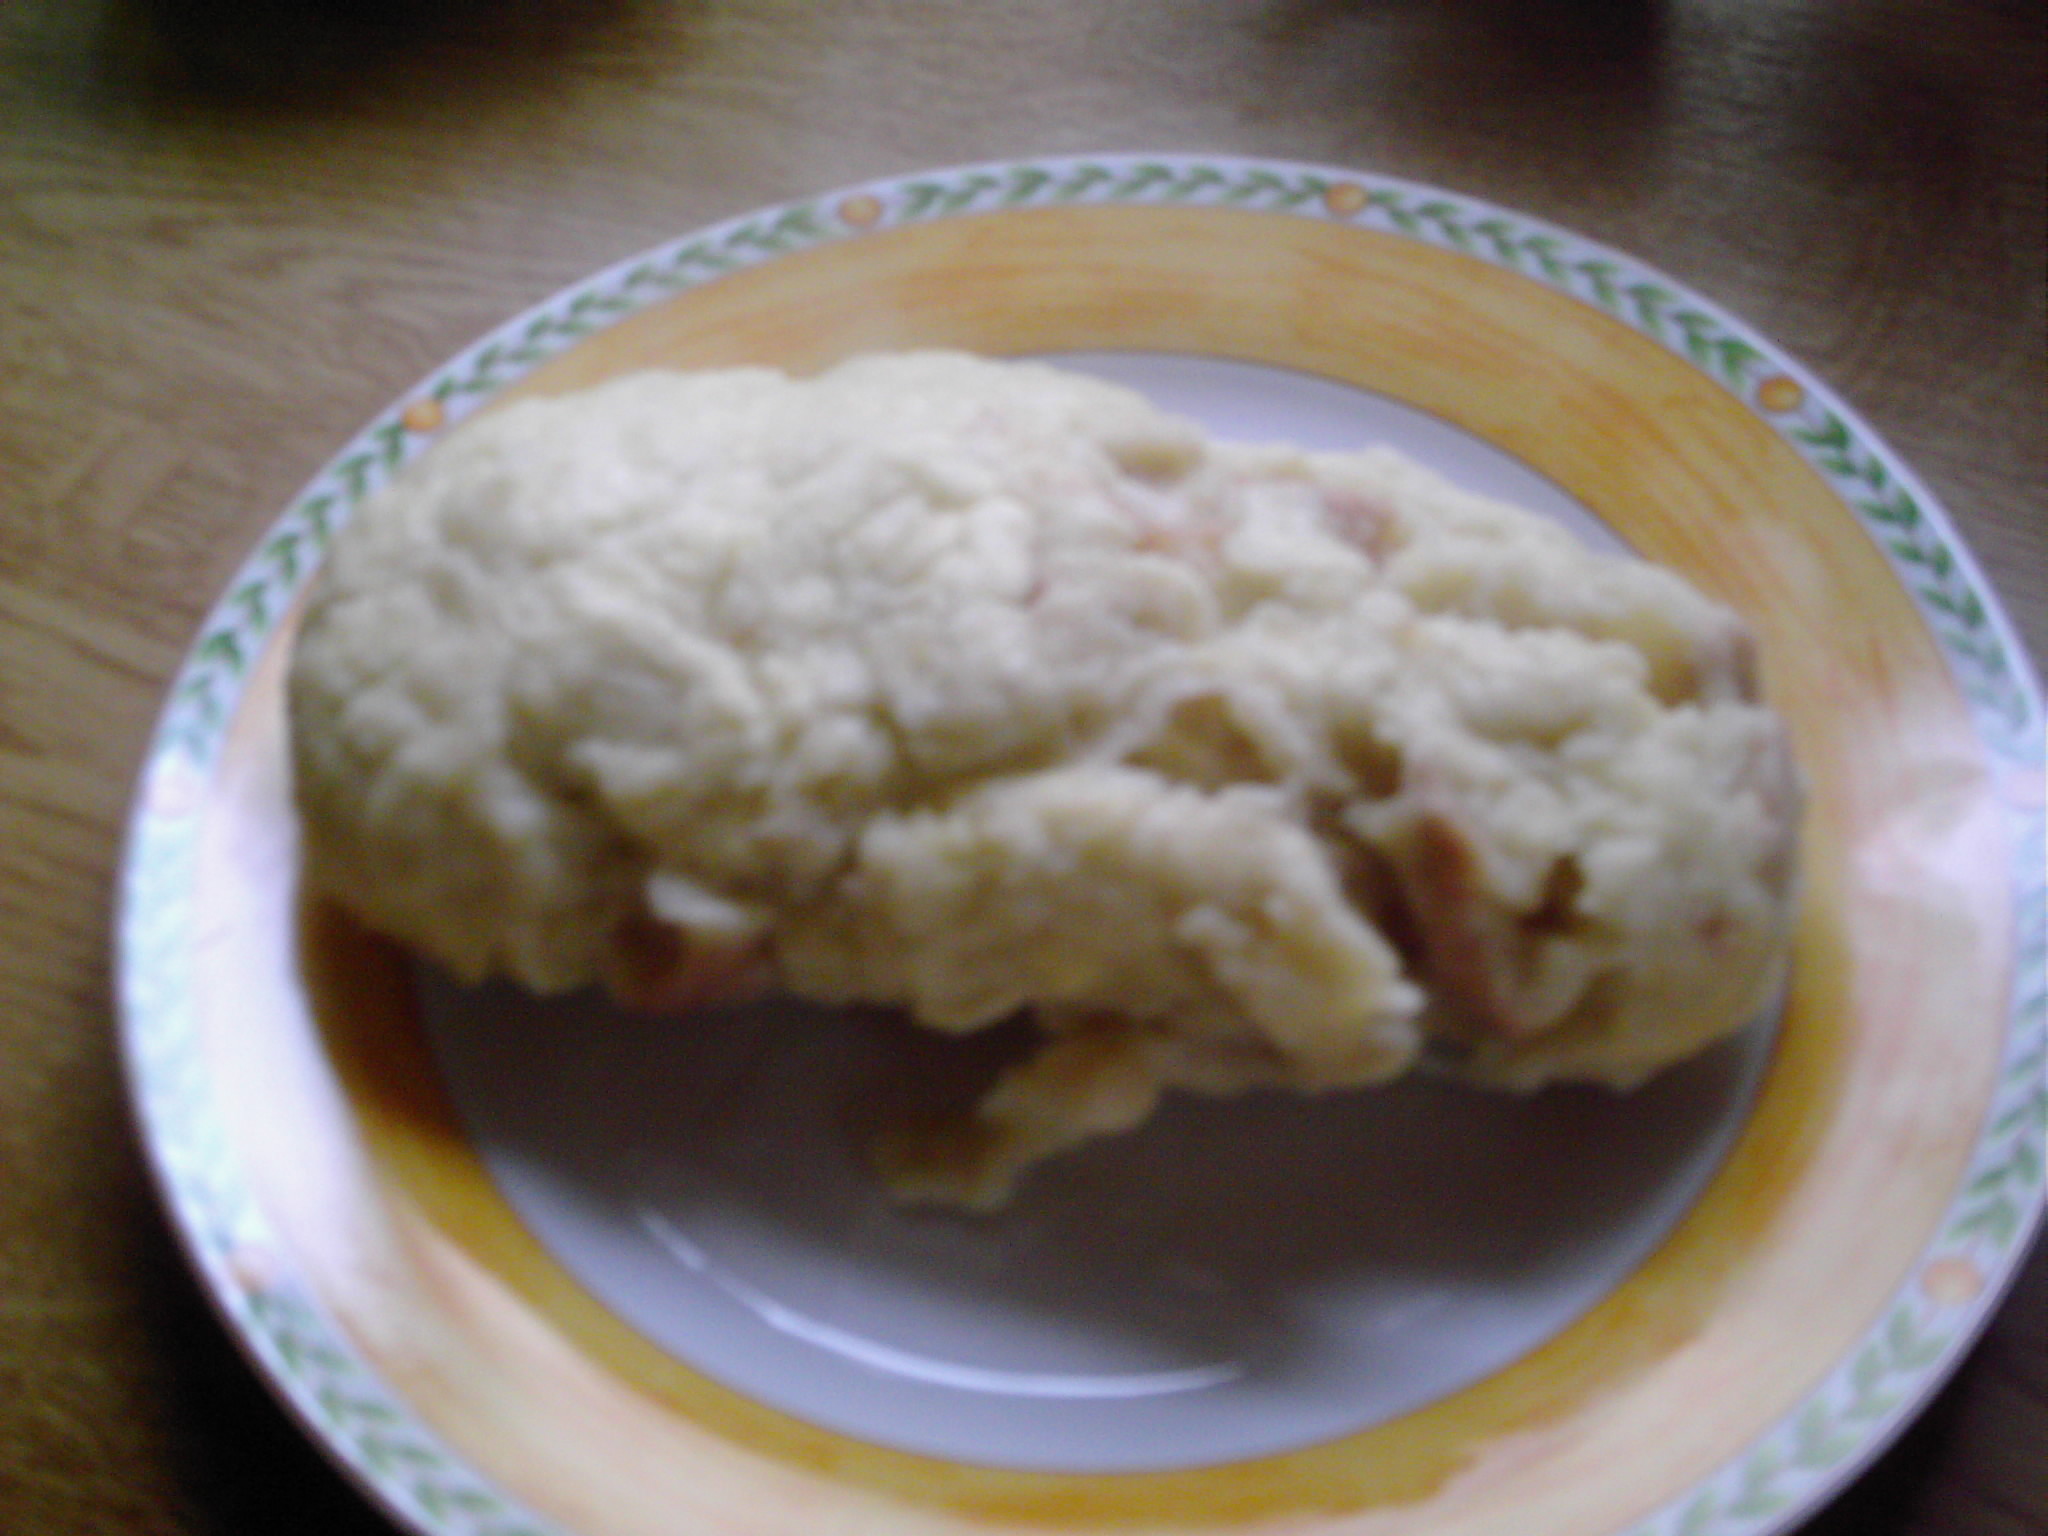 Tocanita de porc cu paine fiarta(Schweine-Geschnetzeltes mit Mehlknödel)